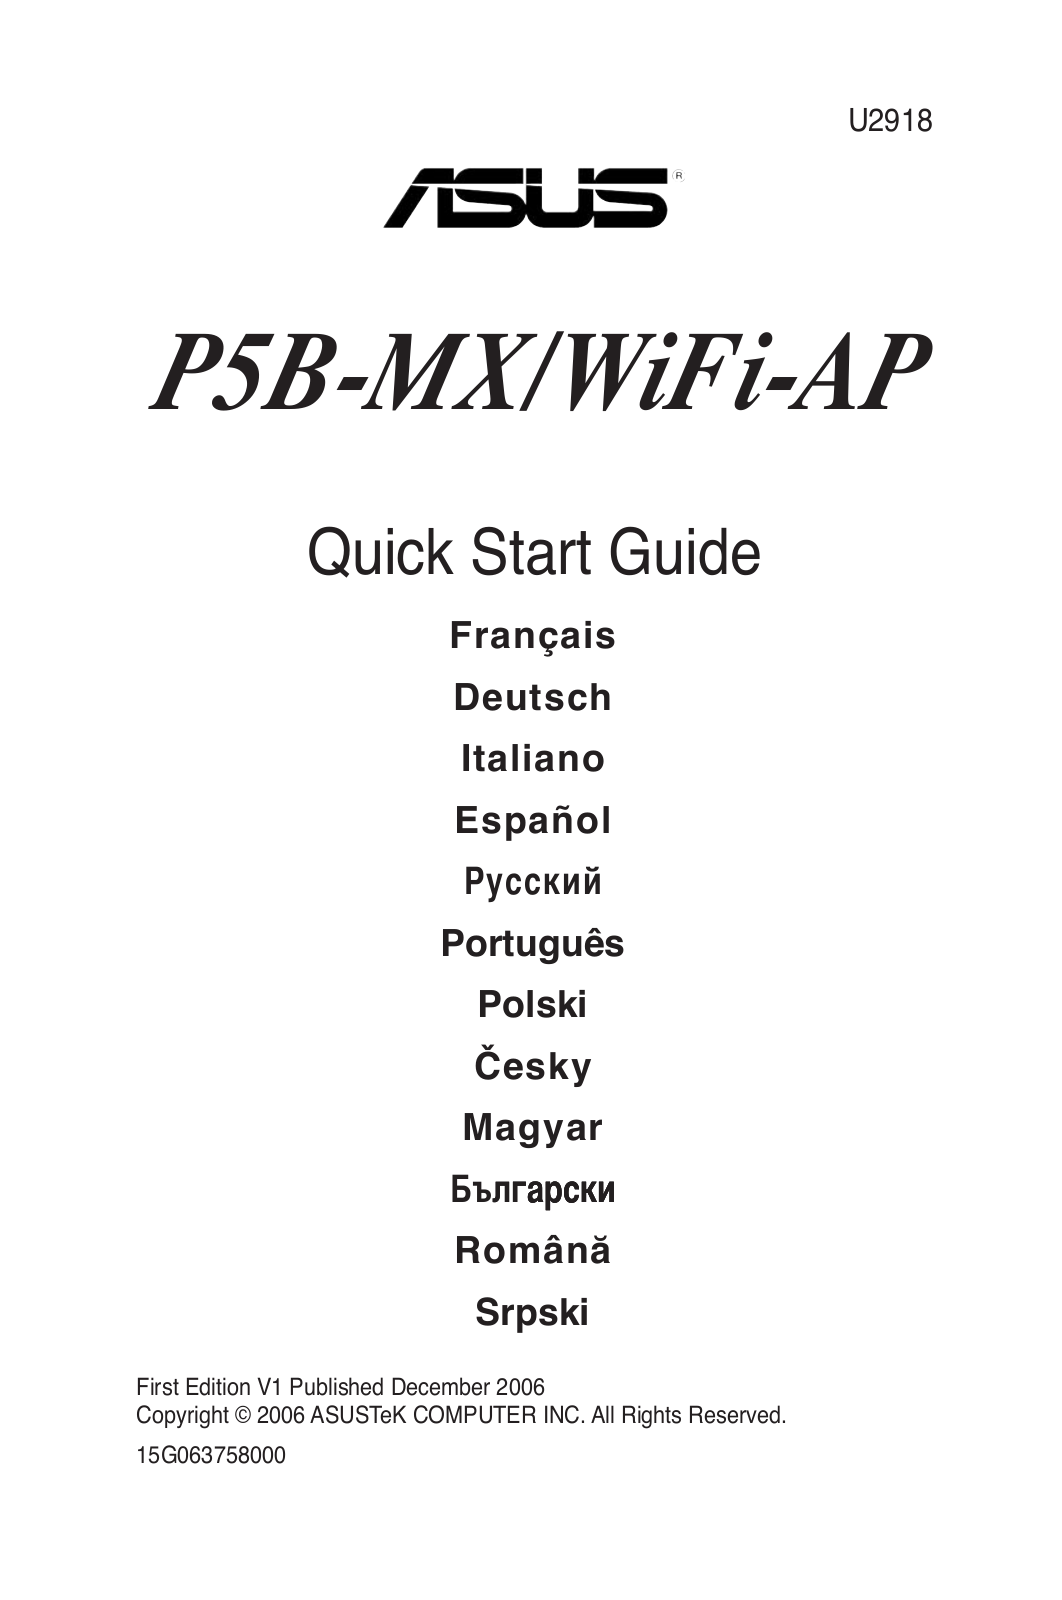 Asus P5B-MX User Manual